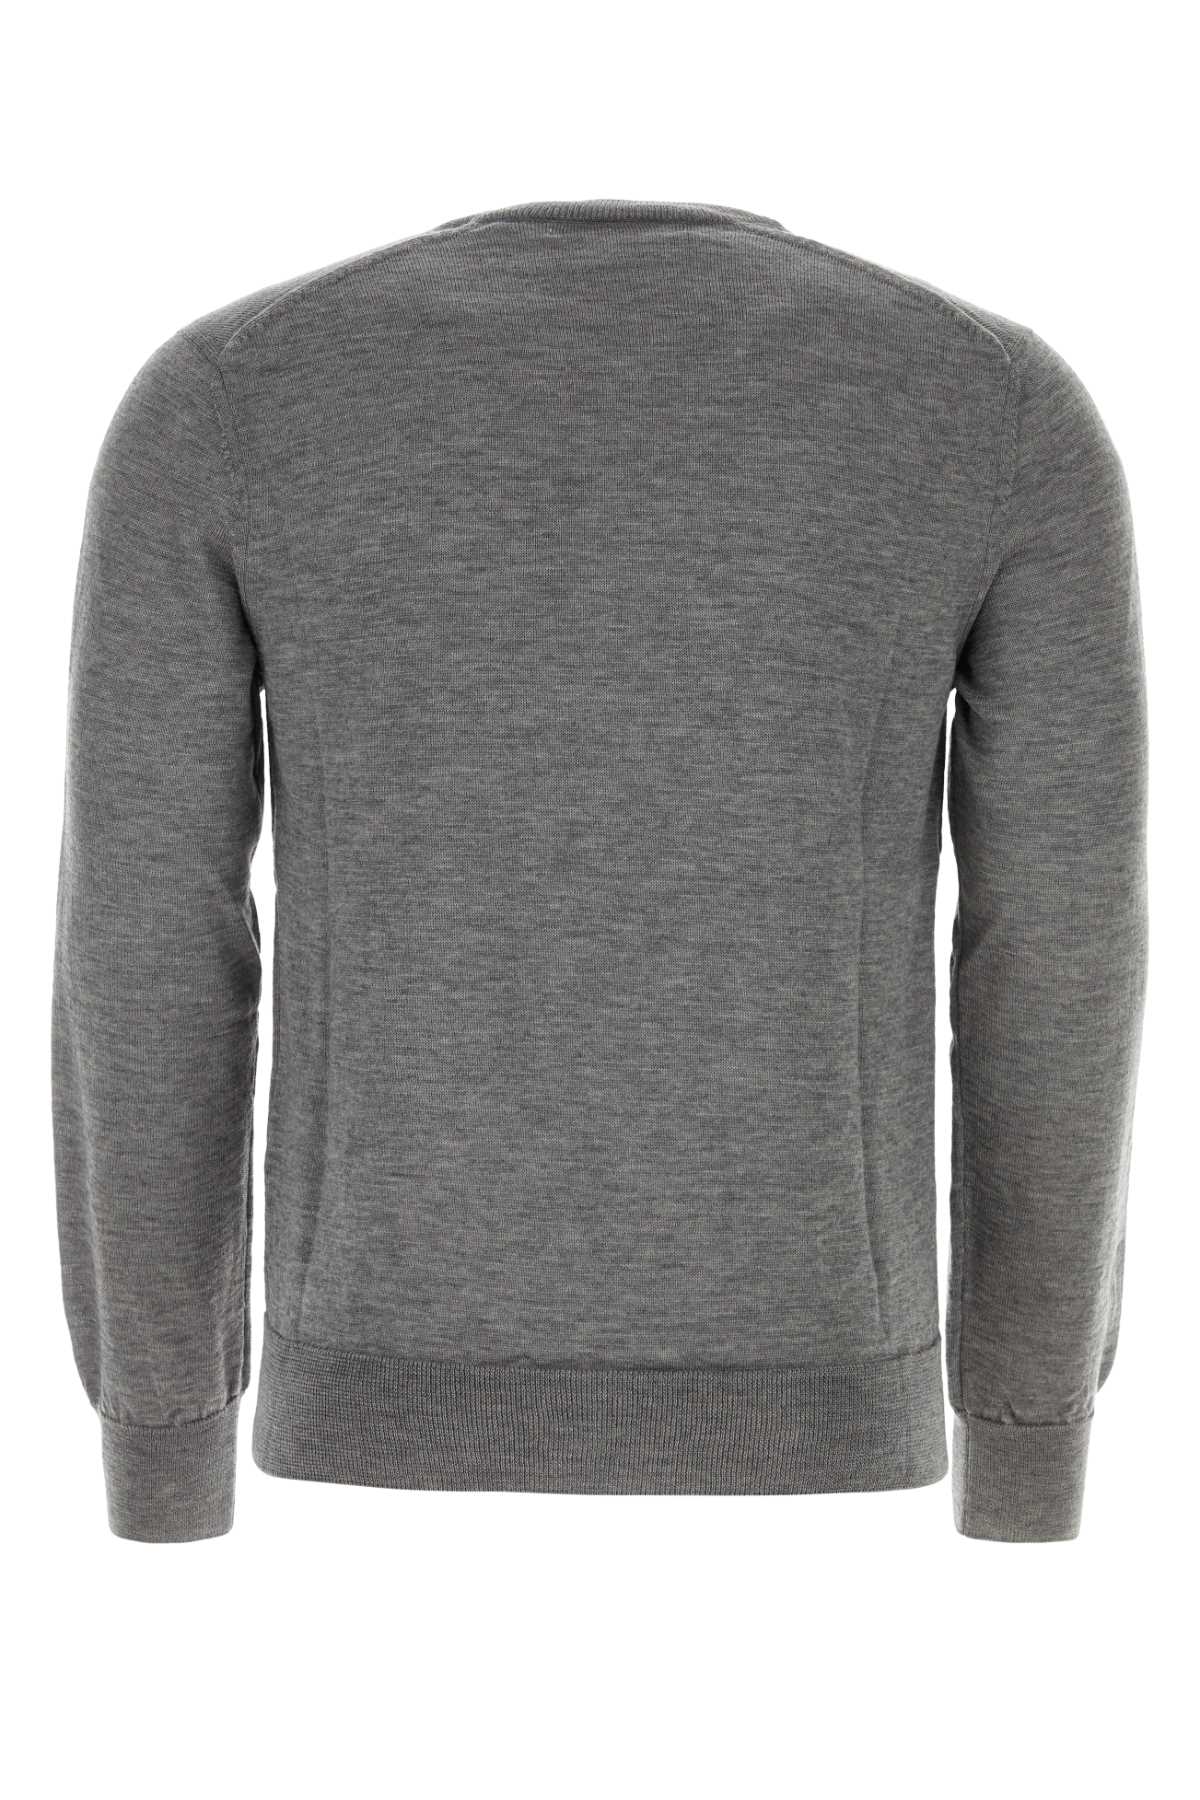 Shop Comme Des Garçons Shirt Dark Grey Acrylic Blend Sweater